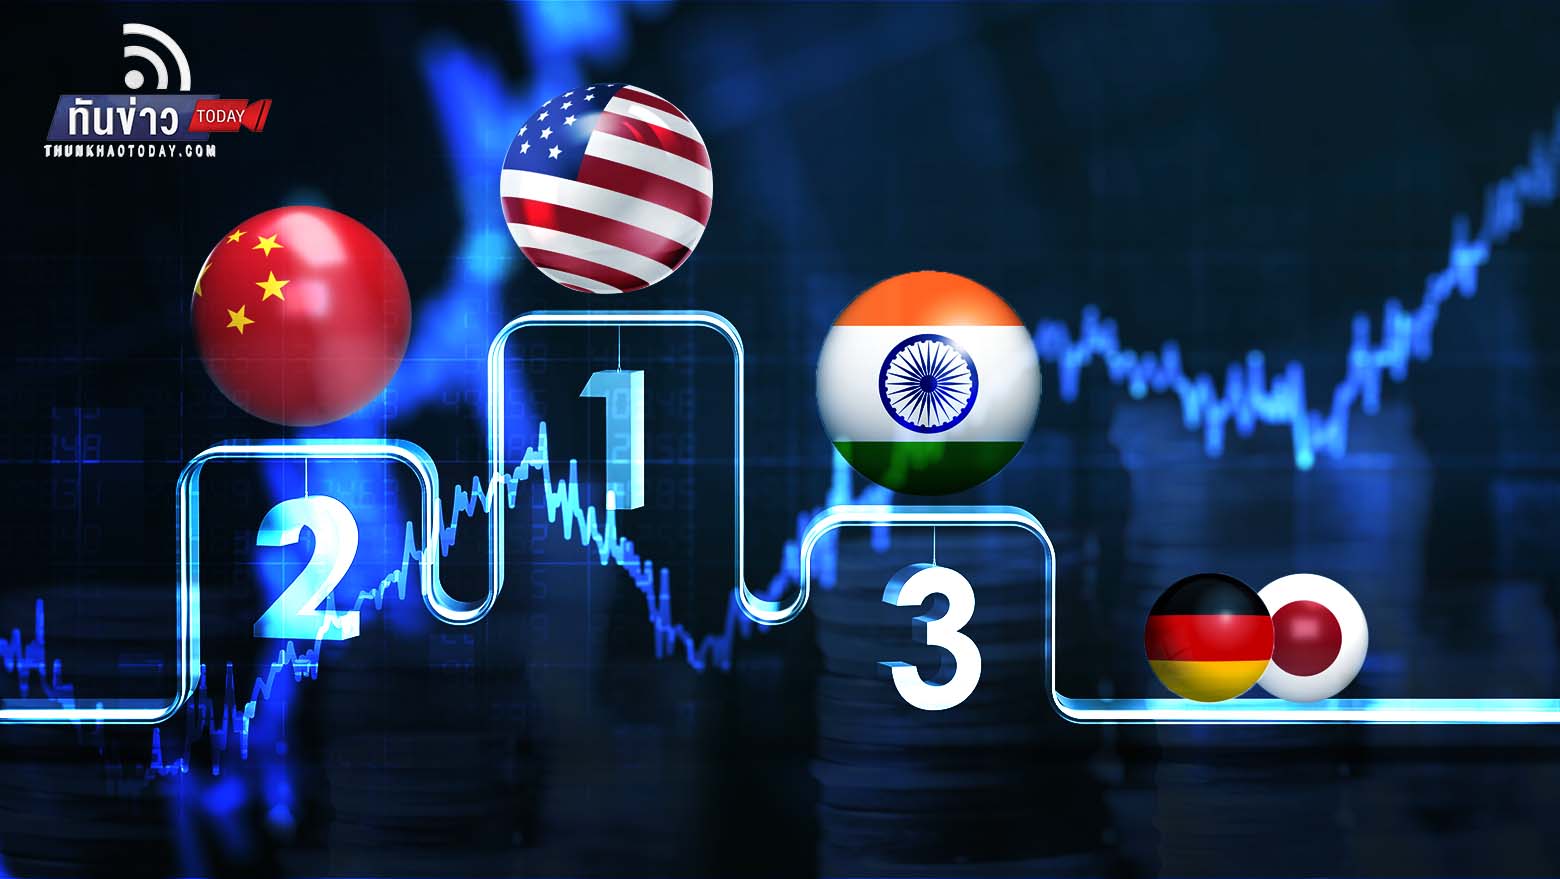 อินเดียจ่อแซงญี่ปุ่น-เยอรมนี ขึ้นแท่นประเทศเศรษฐกิจใหญ่อันดับ 3 ของโลก  ภายในปี 2573